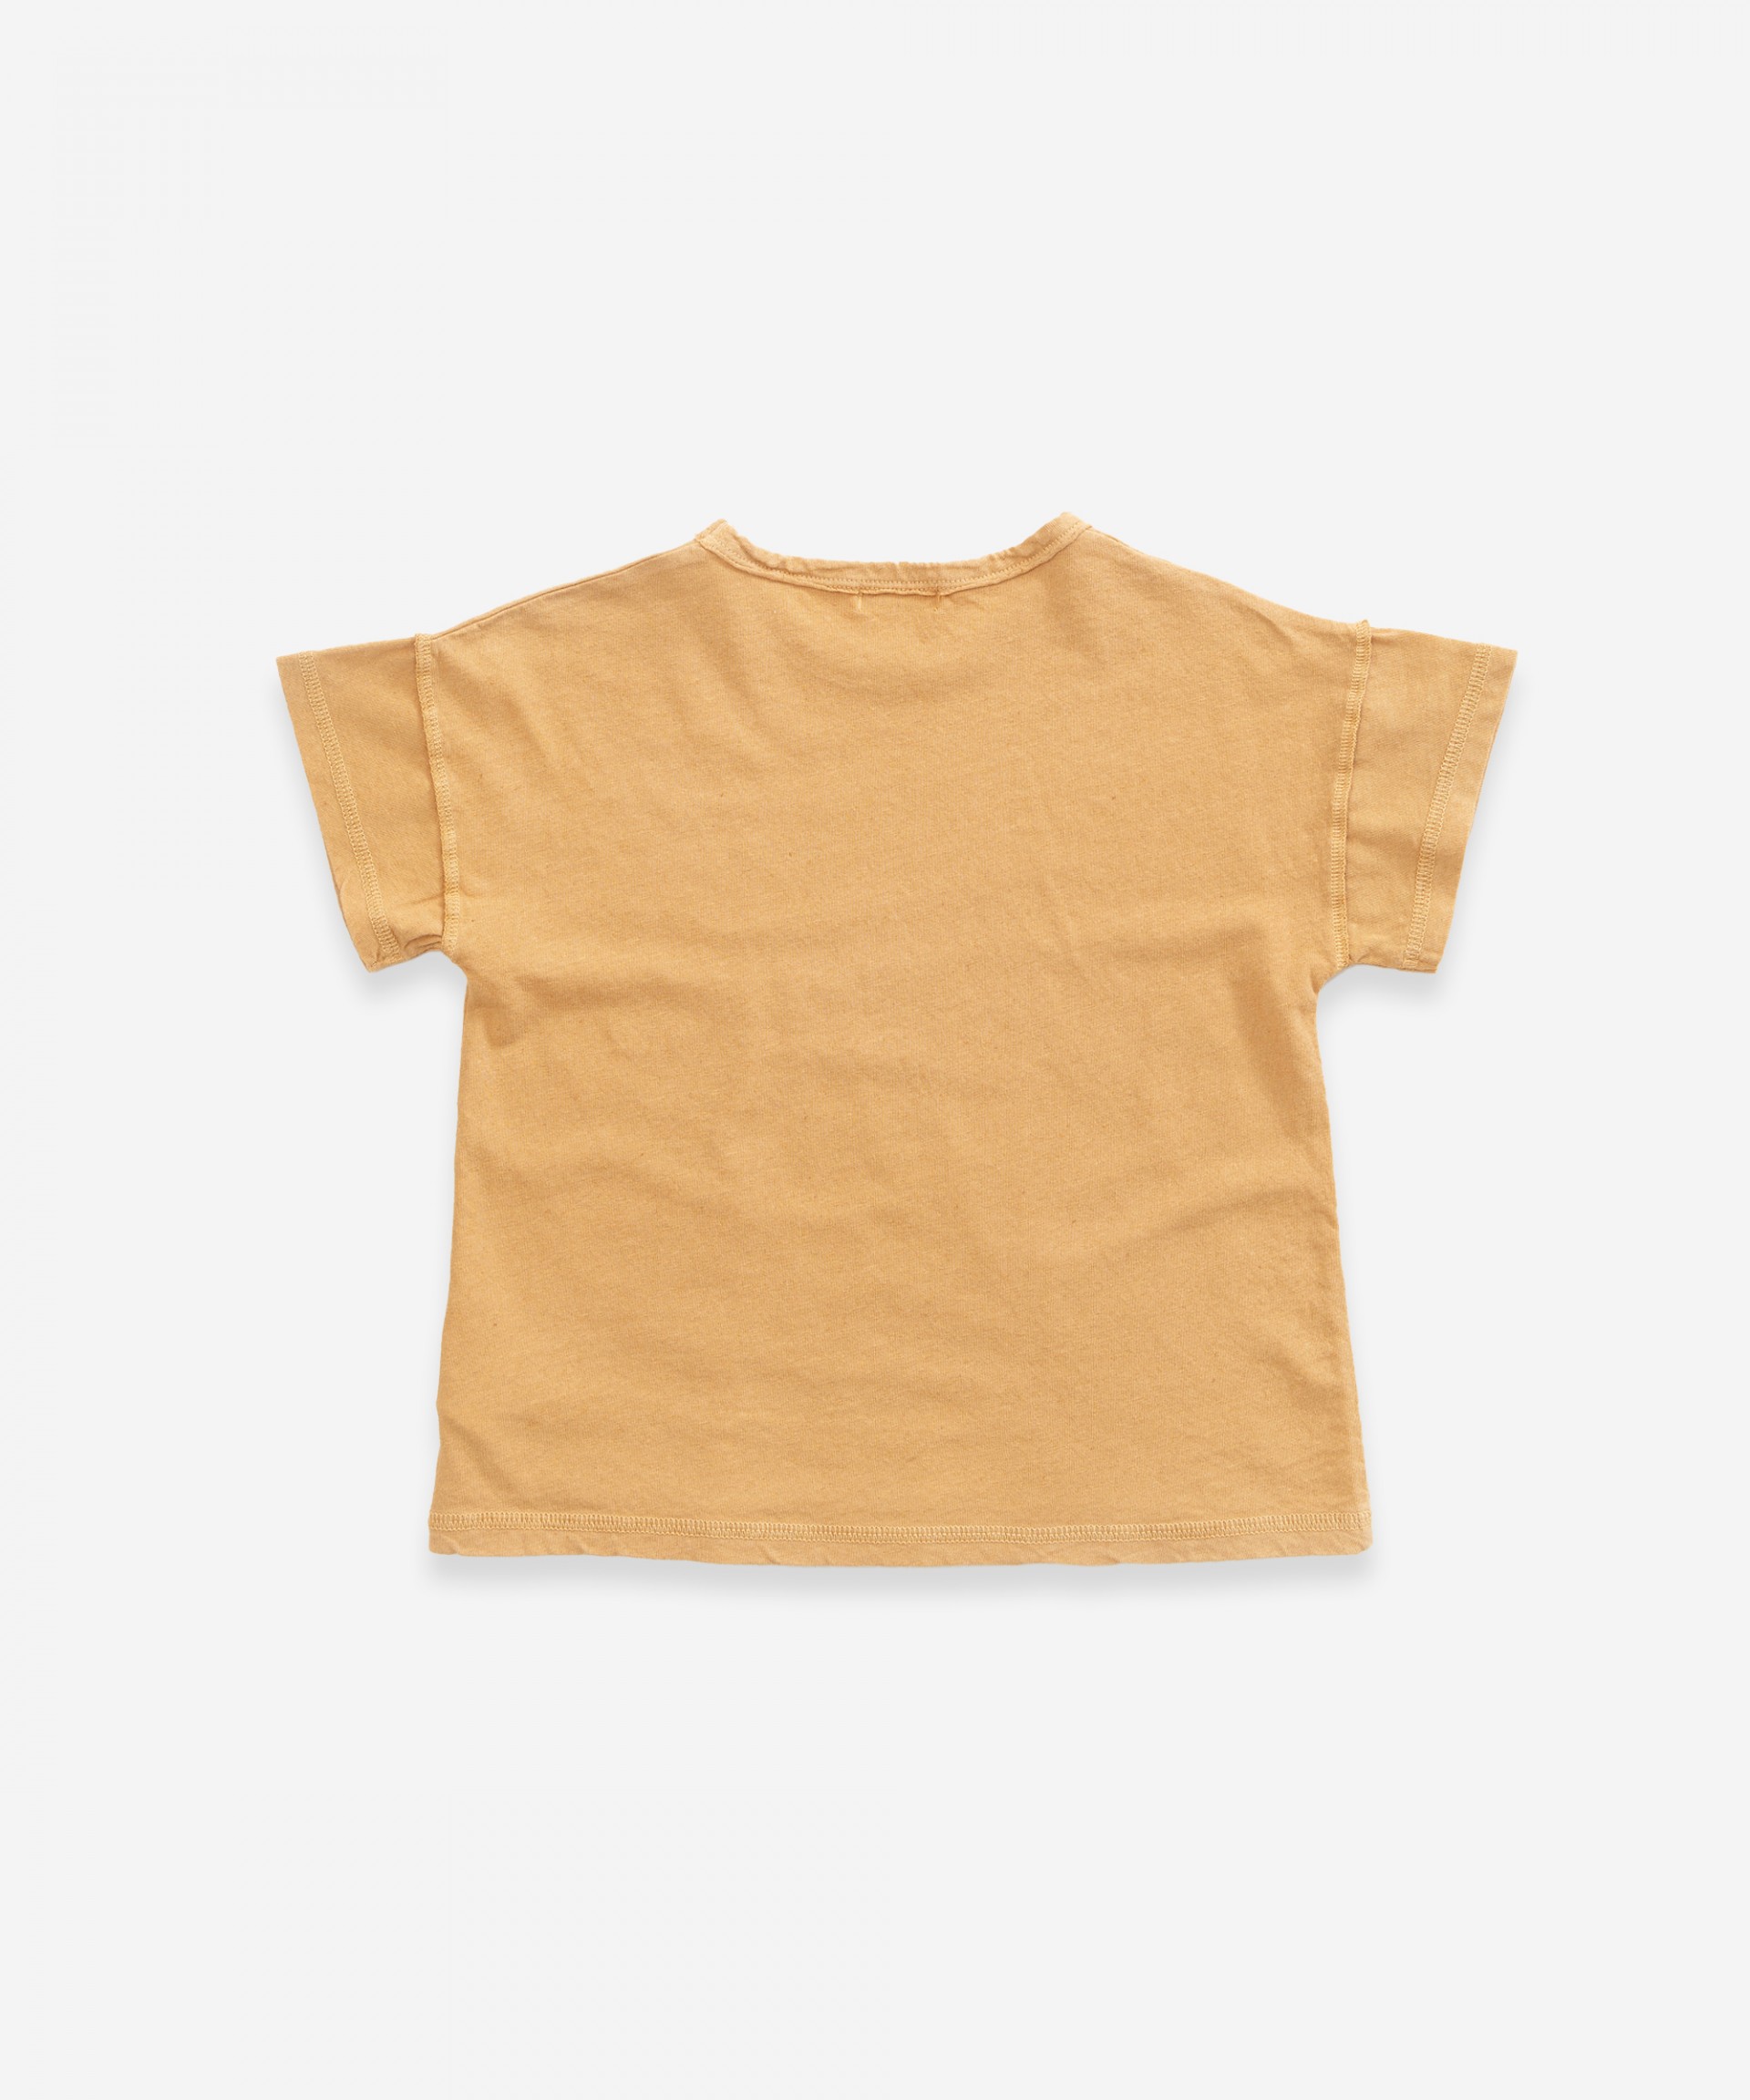 T-shirt com estampado | Weaving